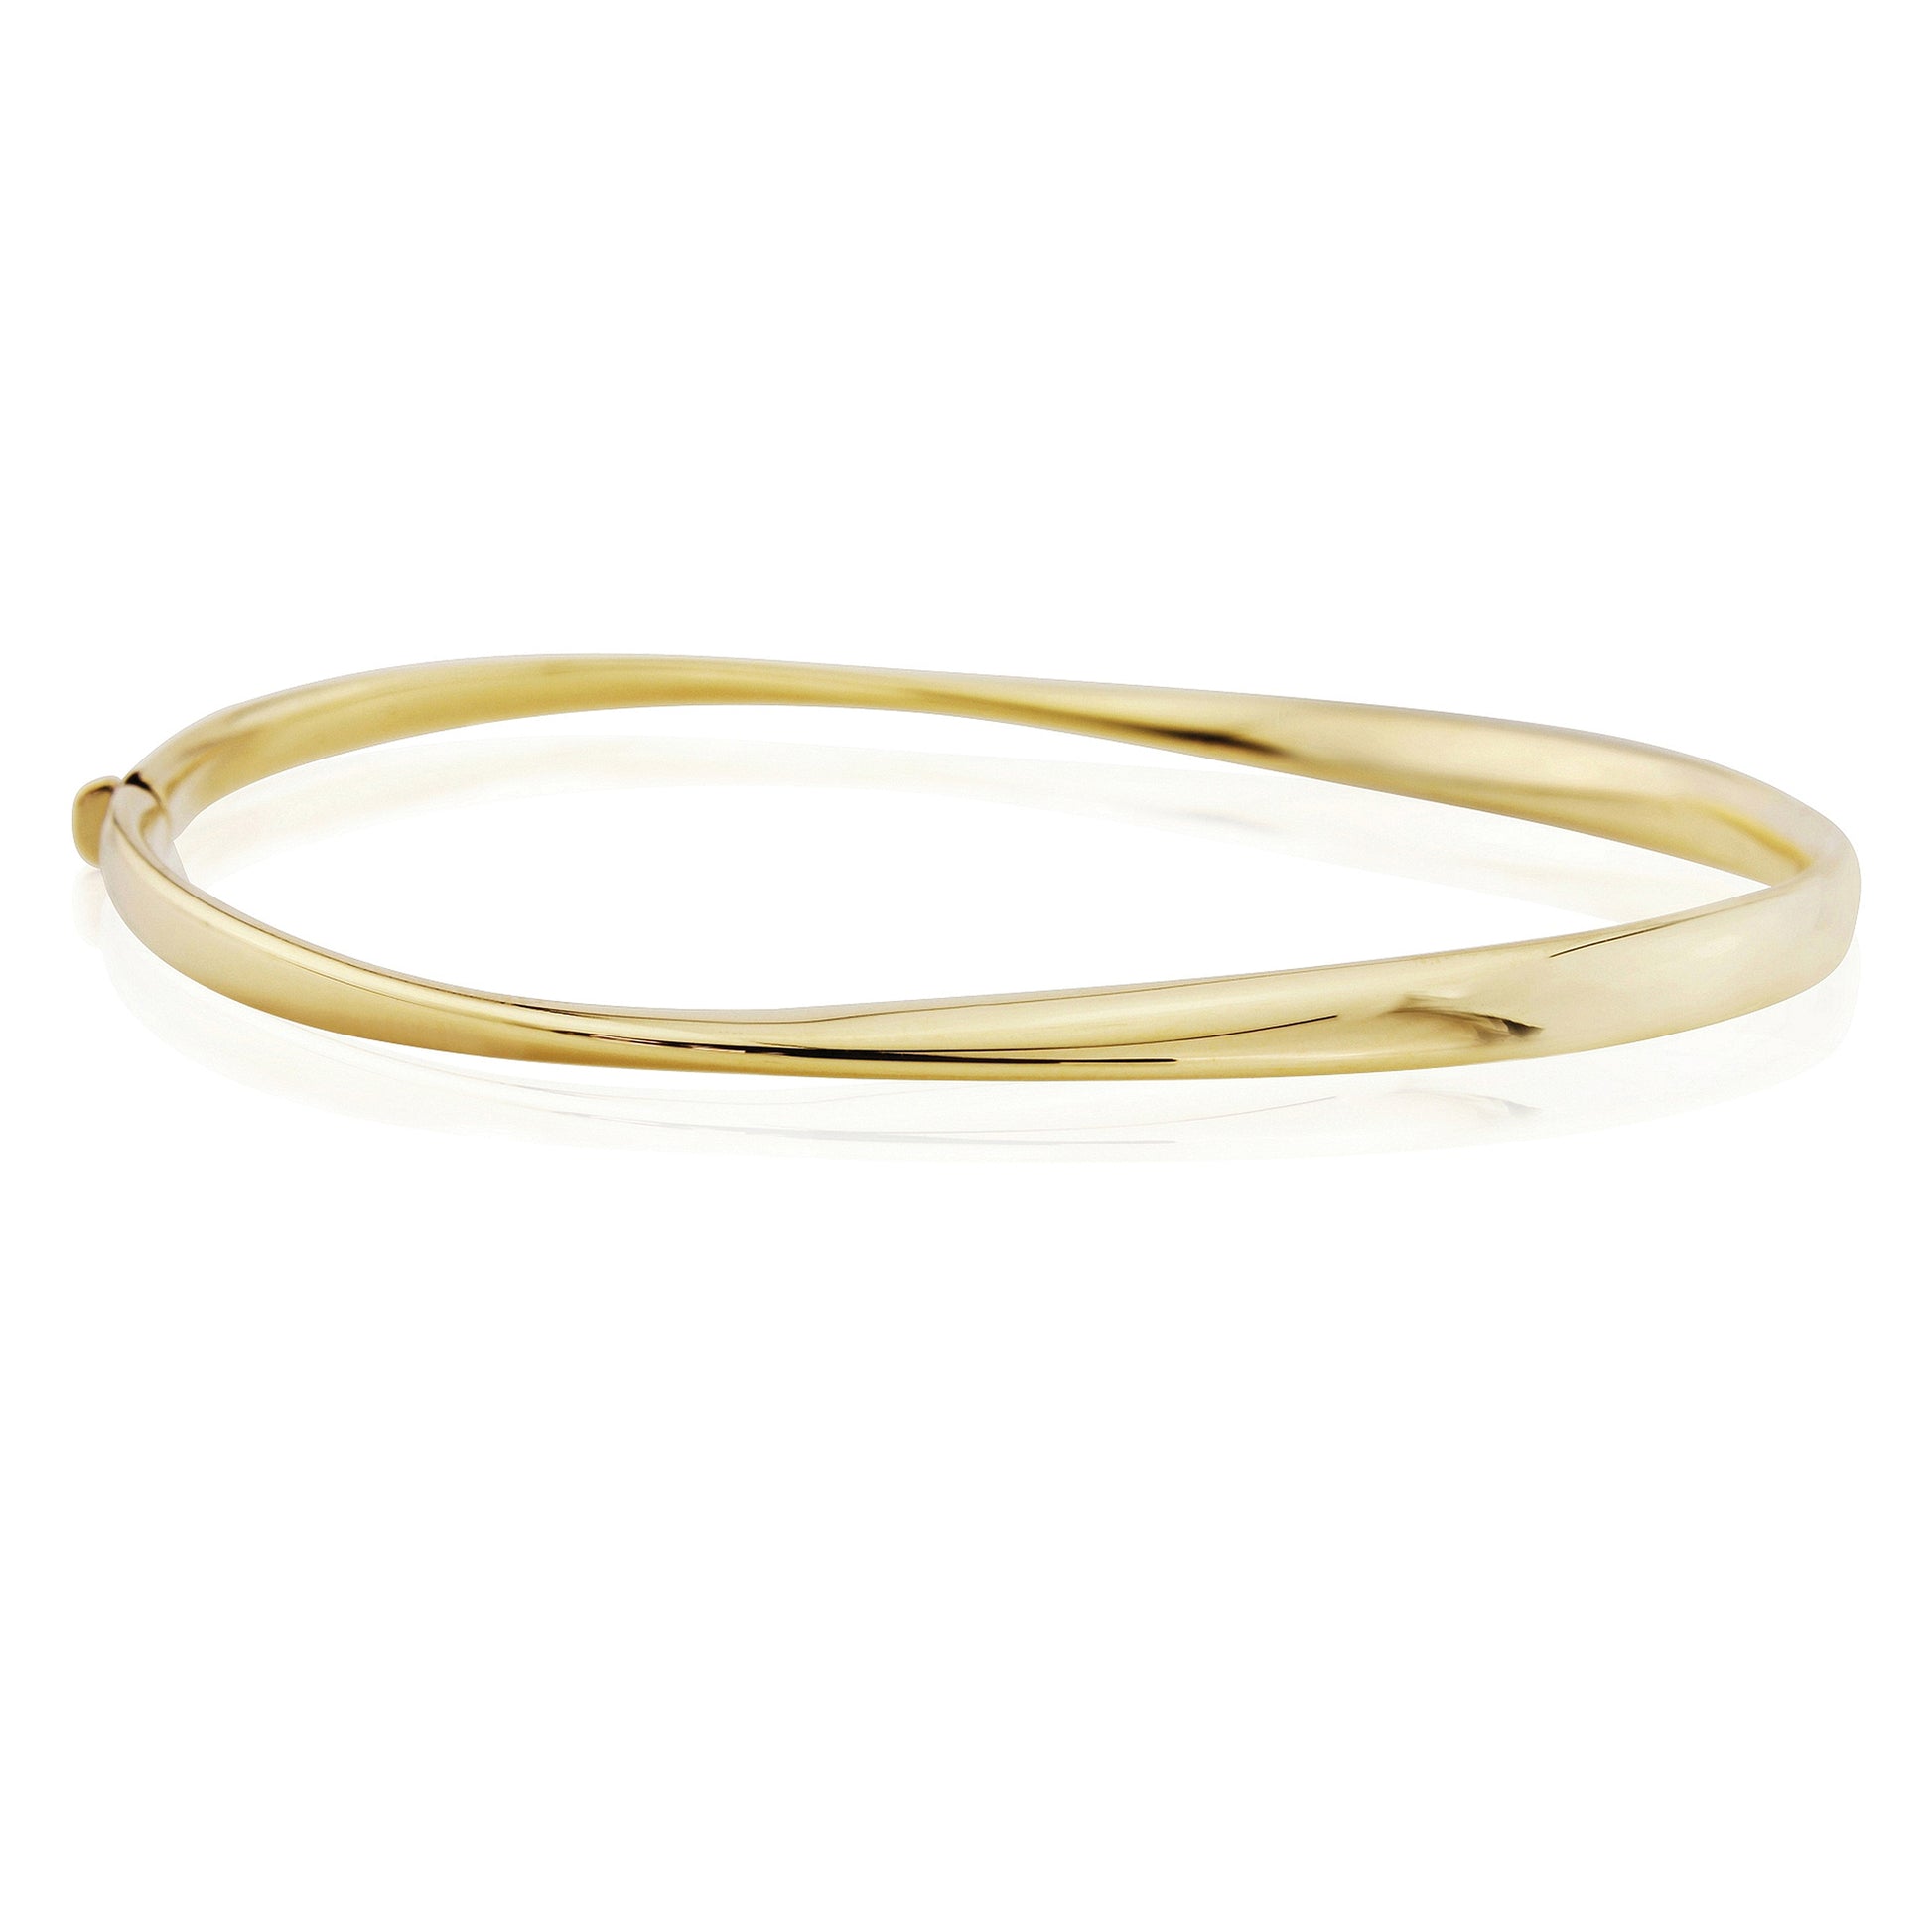 9ct Gold  Polished Twist Bangle Bracelet - BNNR02456